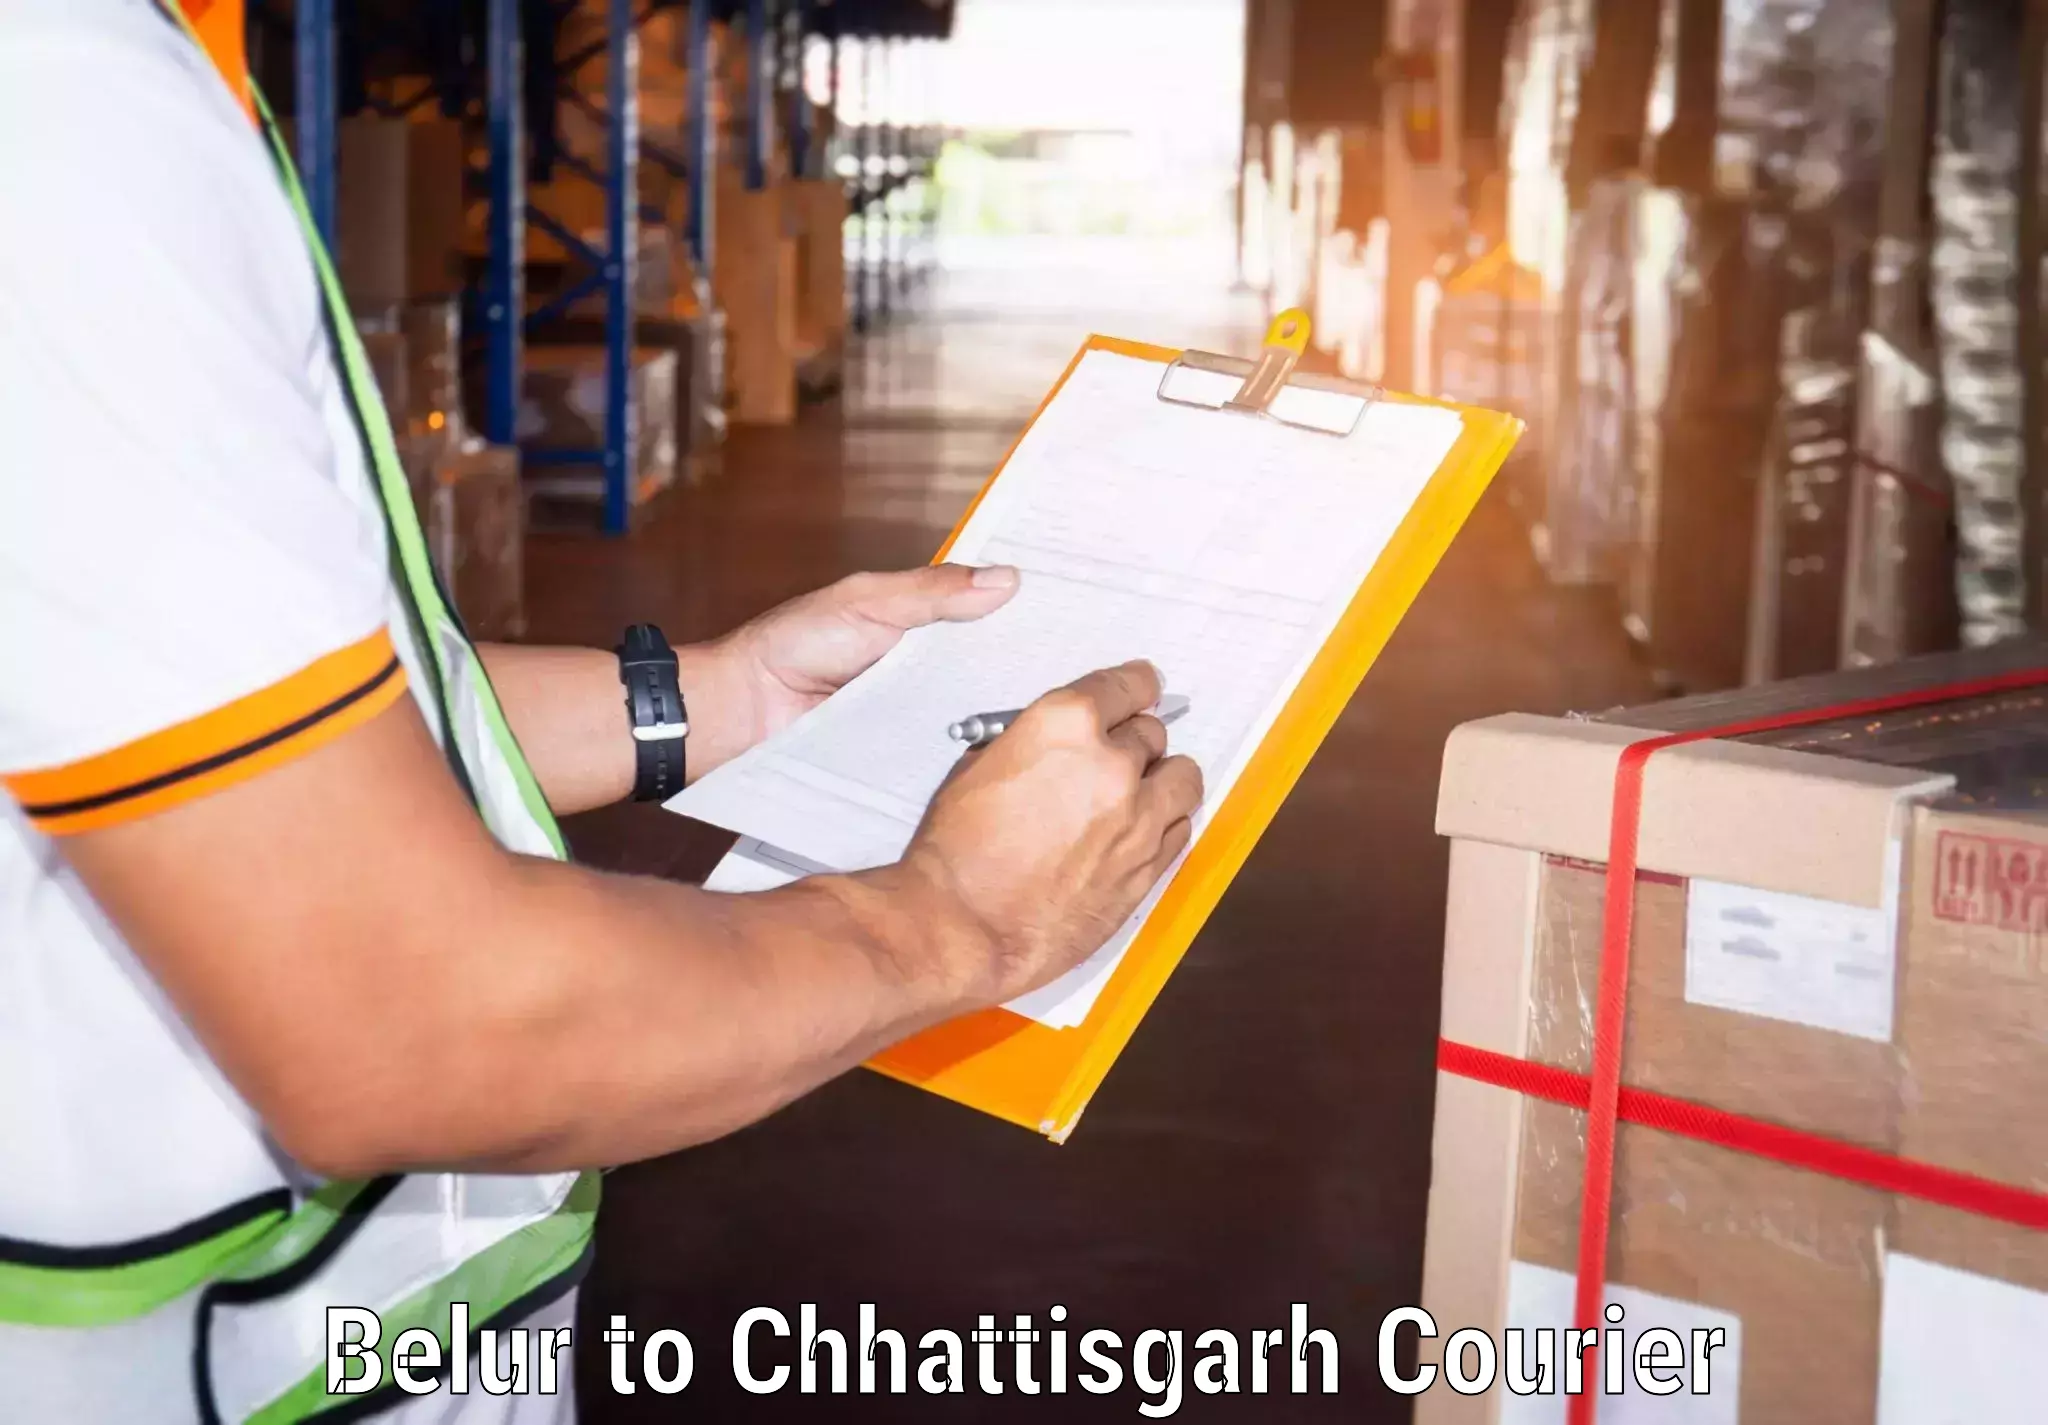 Nationwide courier service Belur to Bijapur Chhattisgarh